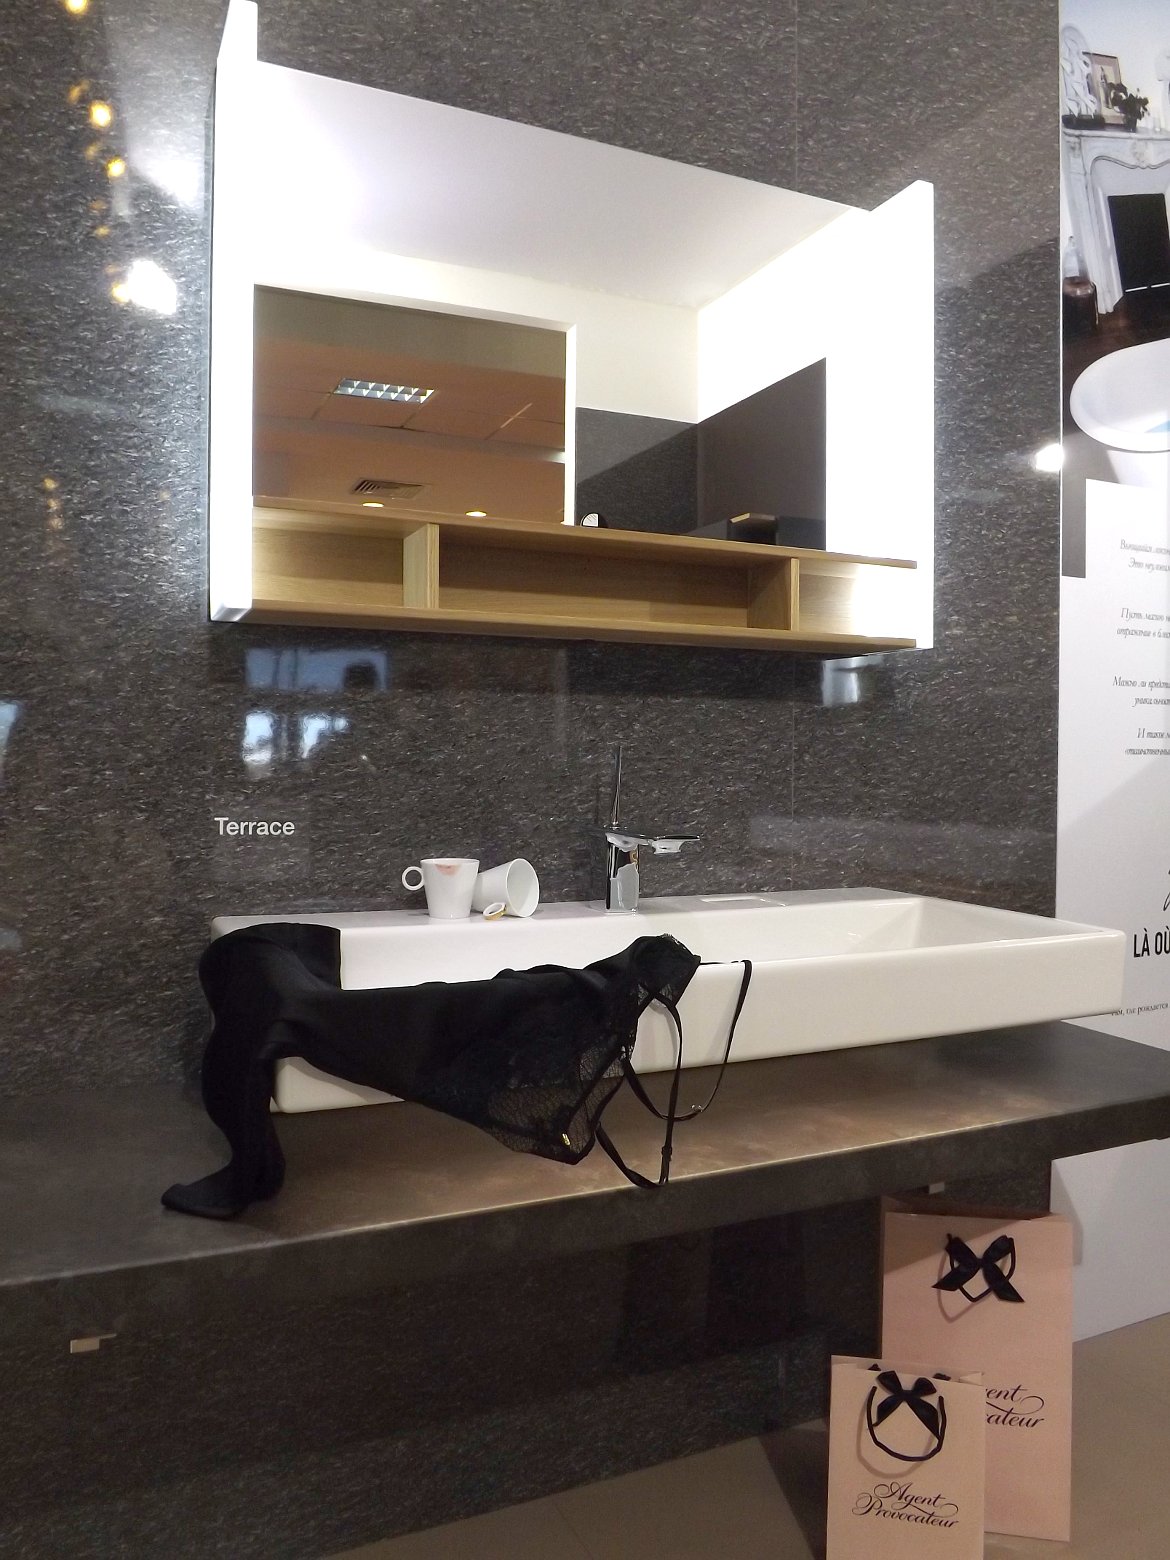 Модные тренды сантехники и аксессуаров для ванной 2016: умывальник с зеркалом и полочками на экспозиции от Jacob Delafon во время выставки MosBuild